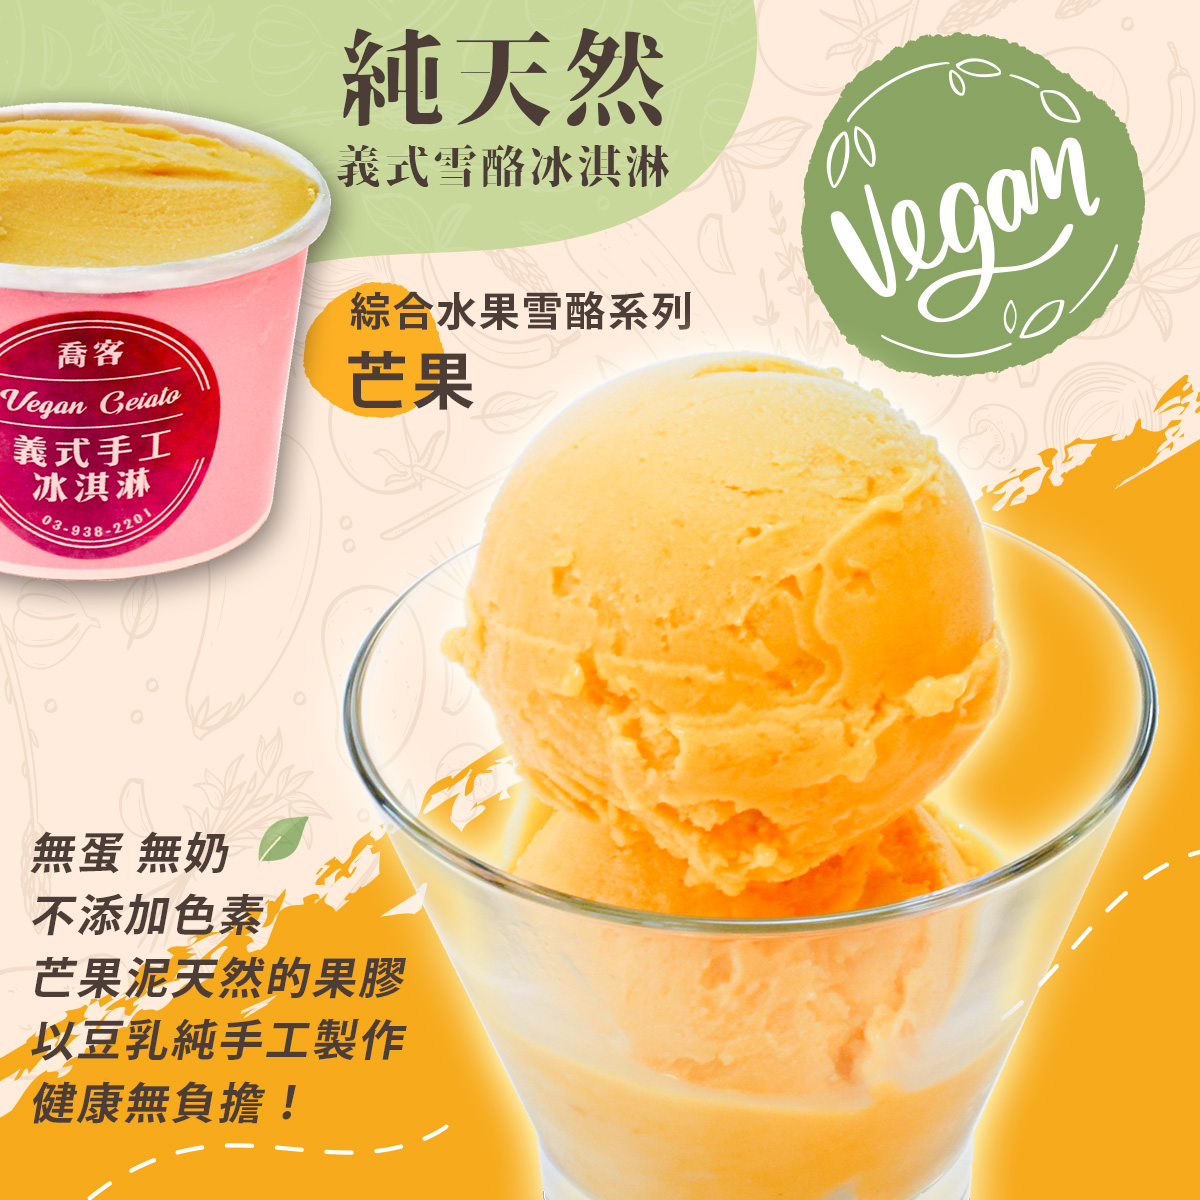 【喬客】水果雪酪系列-芒果 冰淇淋